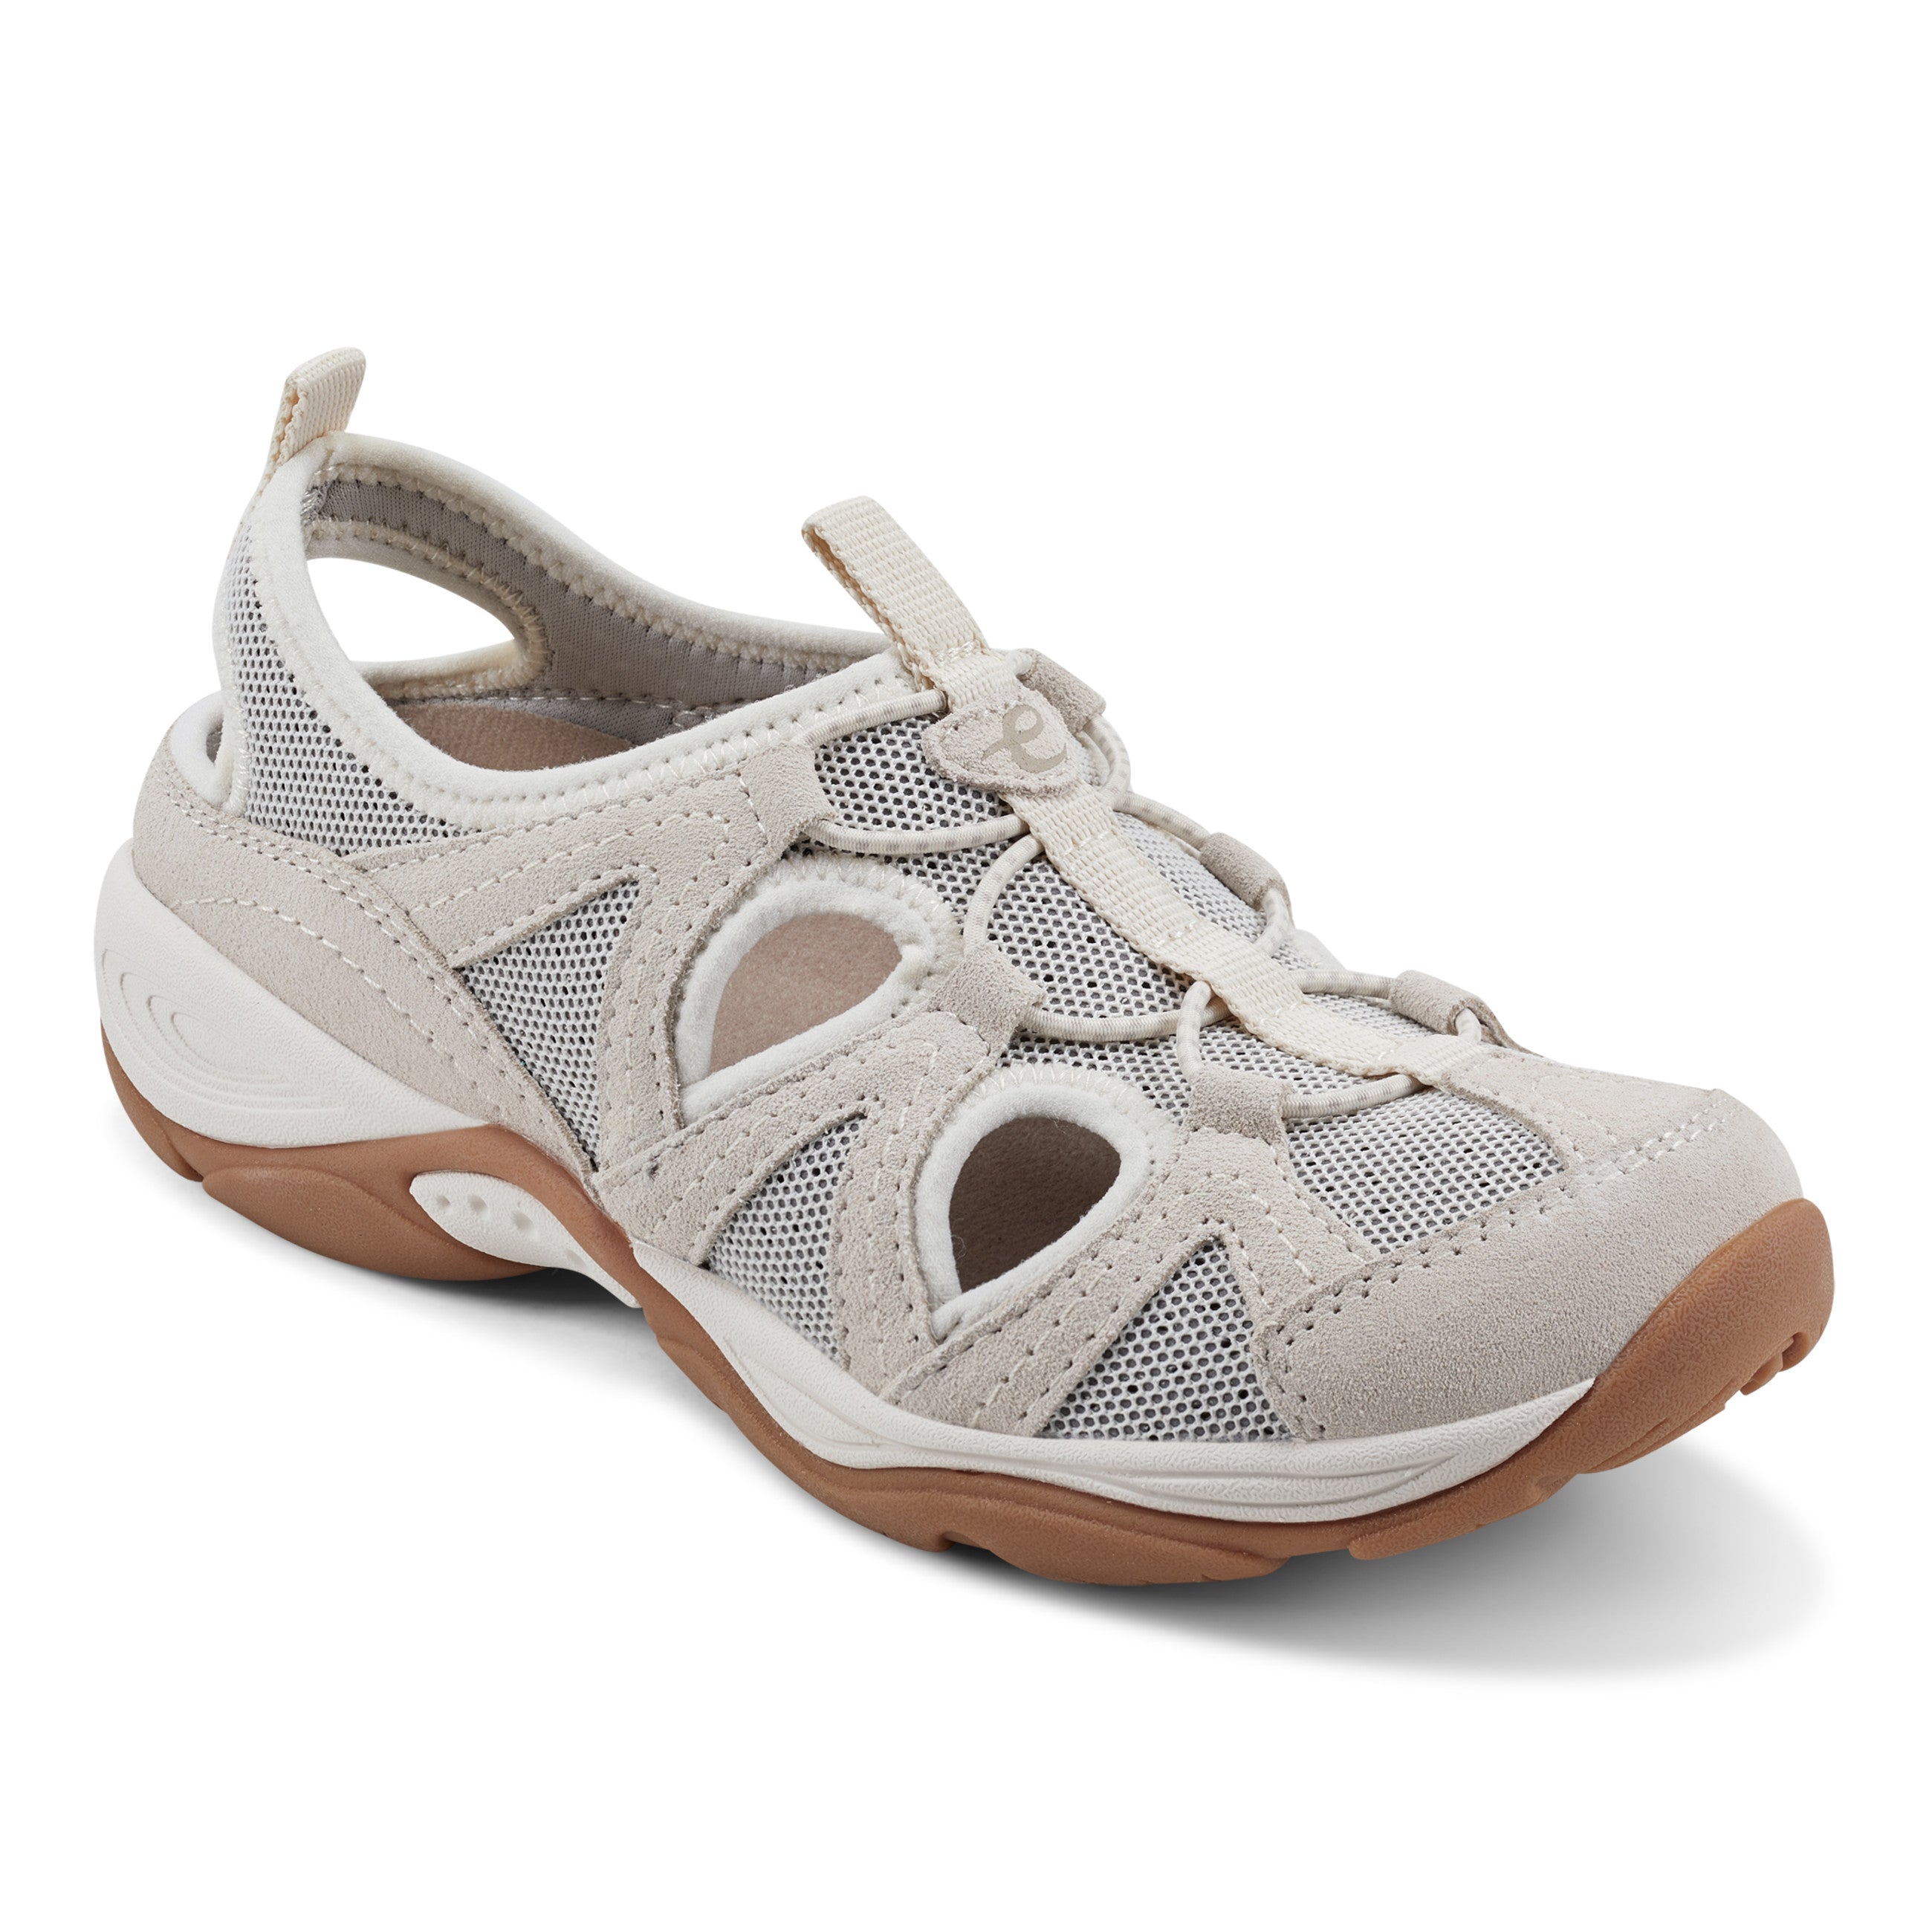 Flat Sandals Women's Sandals & Flip Flops for Shoes - JCPenney | Ankle  strap sandals flat, Gucci shoes women, Sandals